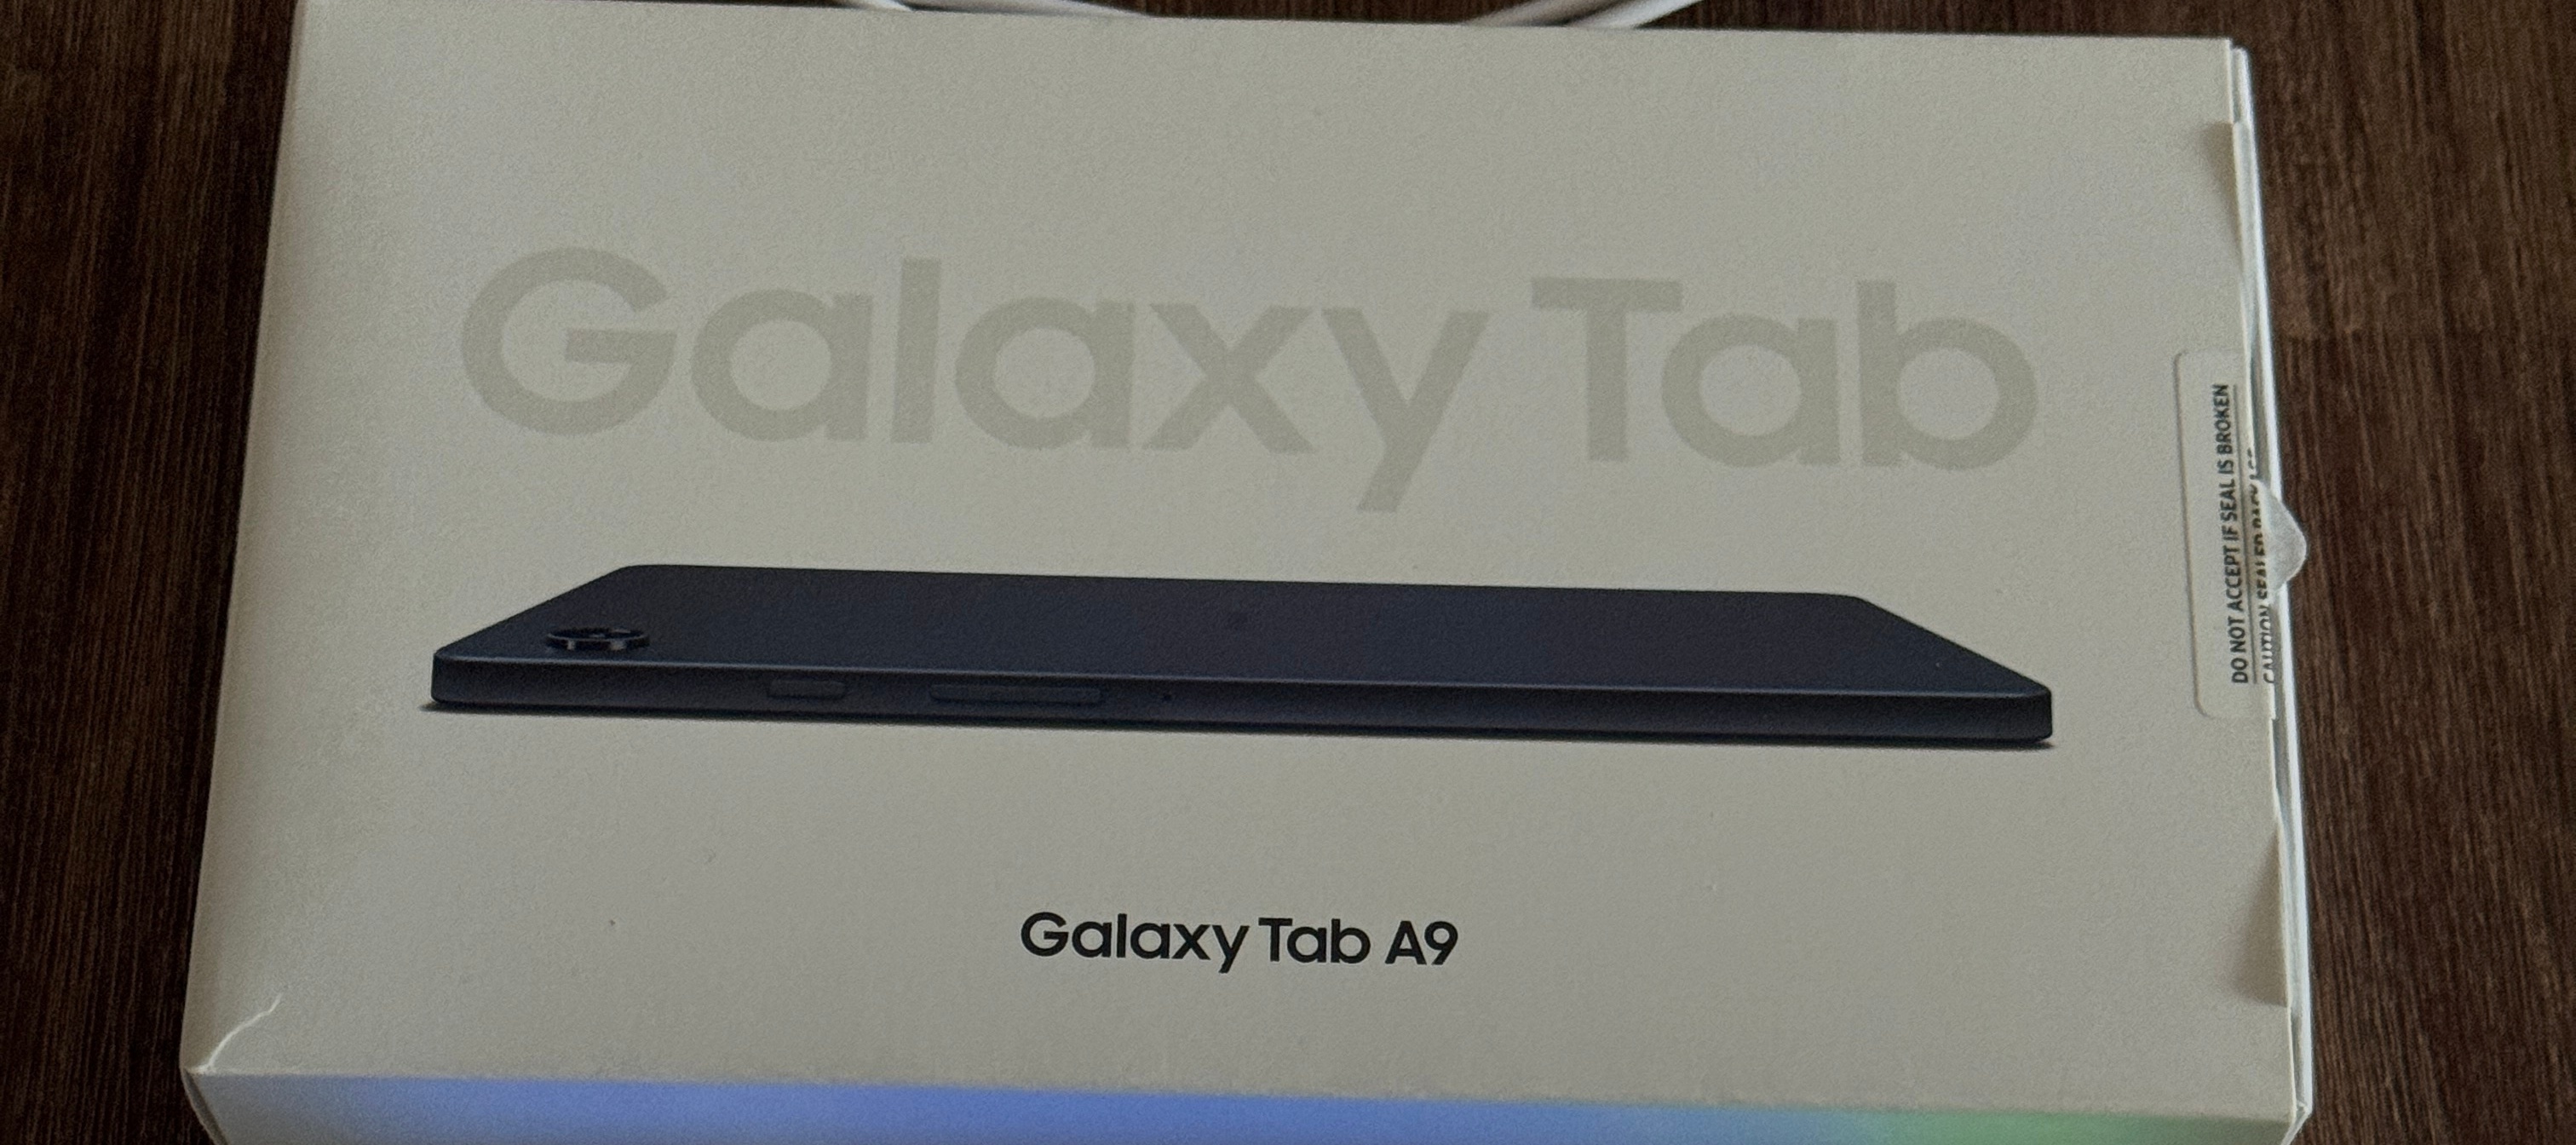 Testbericht zum Samsung Galaxy Tab A9 - Das iPad mini von Samsung?